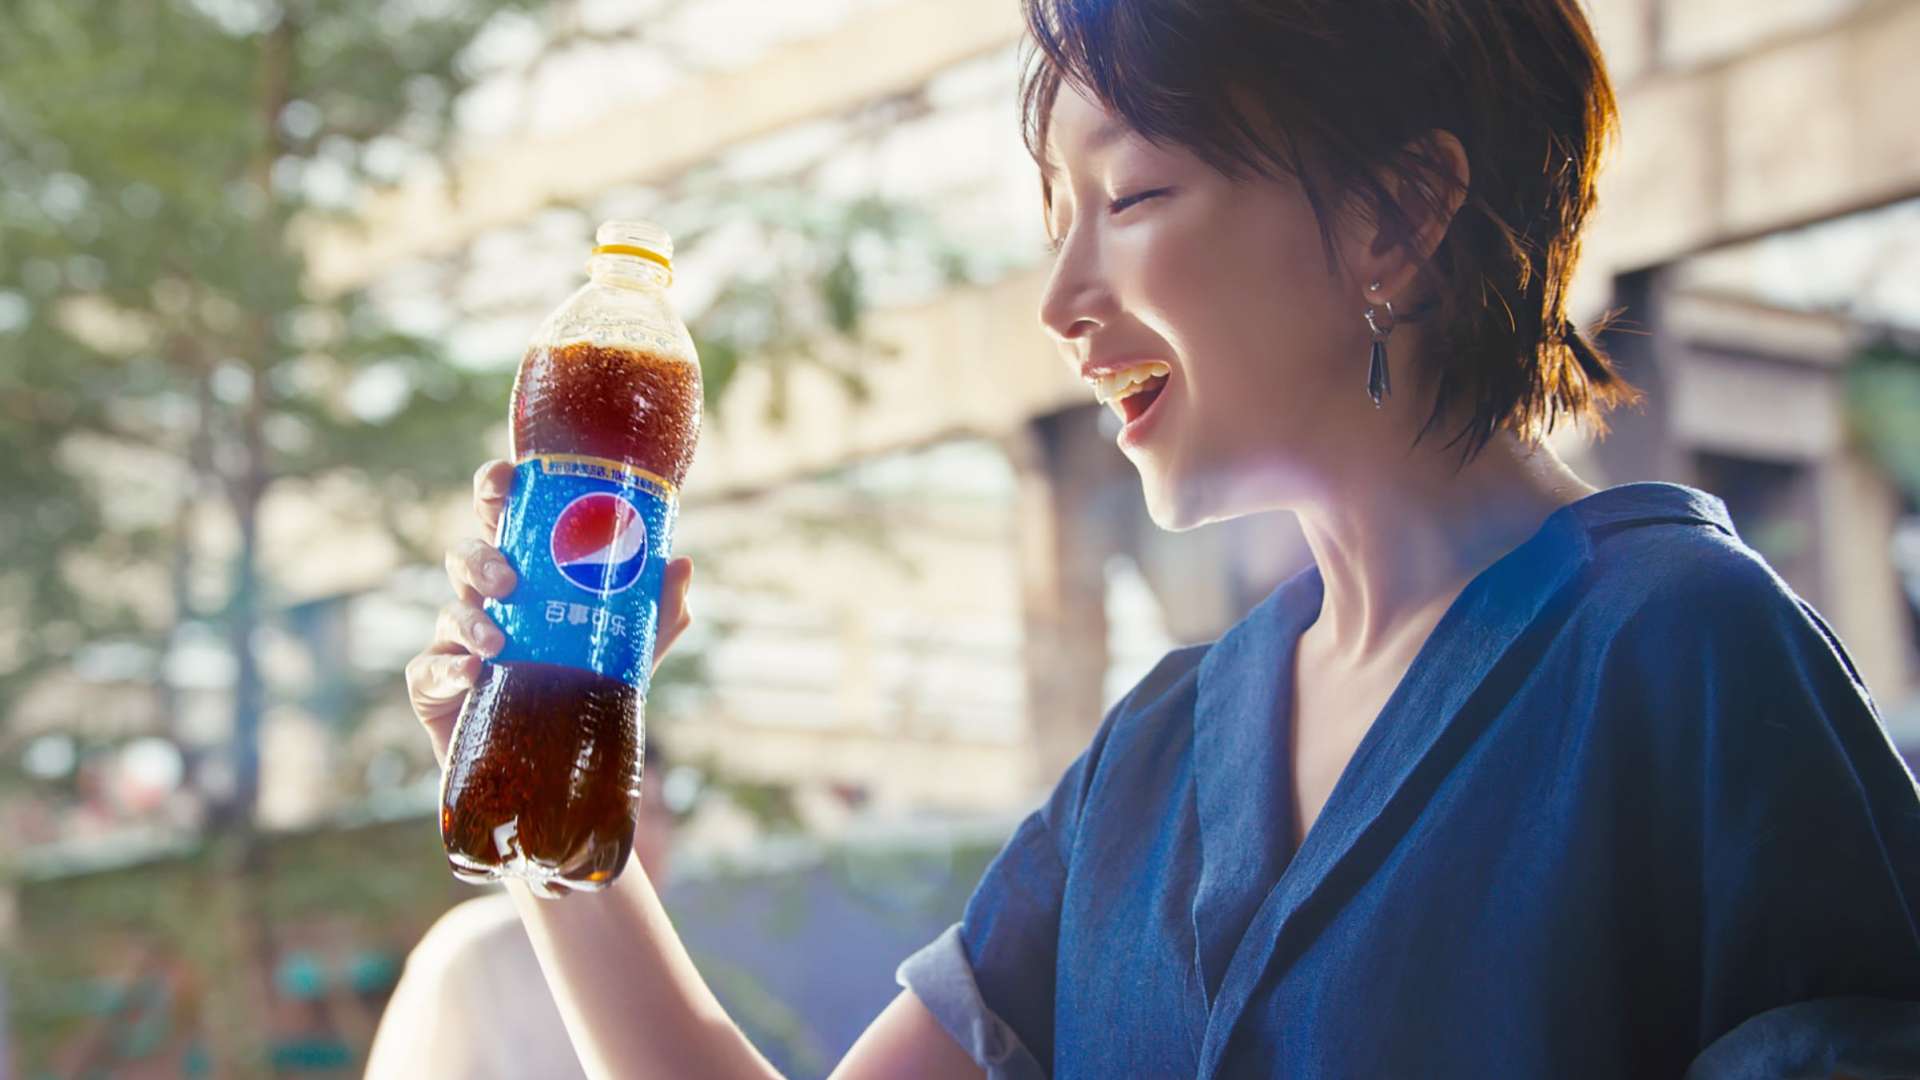 Pepsi 百事可乐“盖念店” 周冬雨 王嘉尔 联袂出演